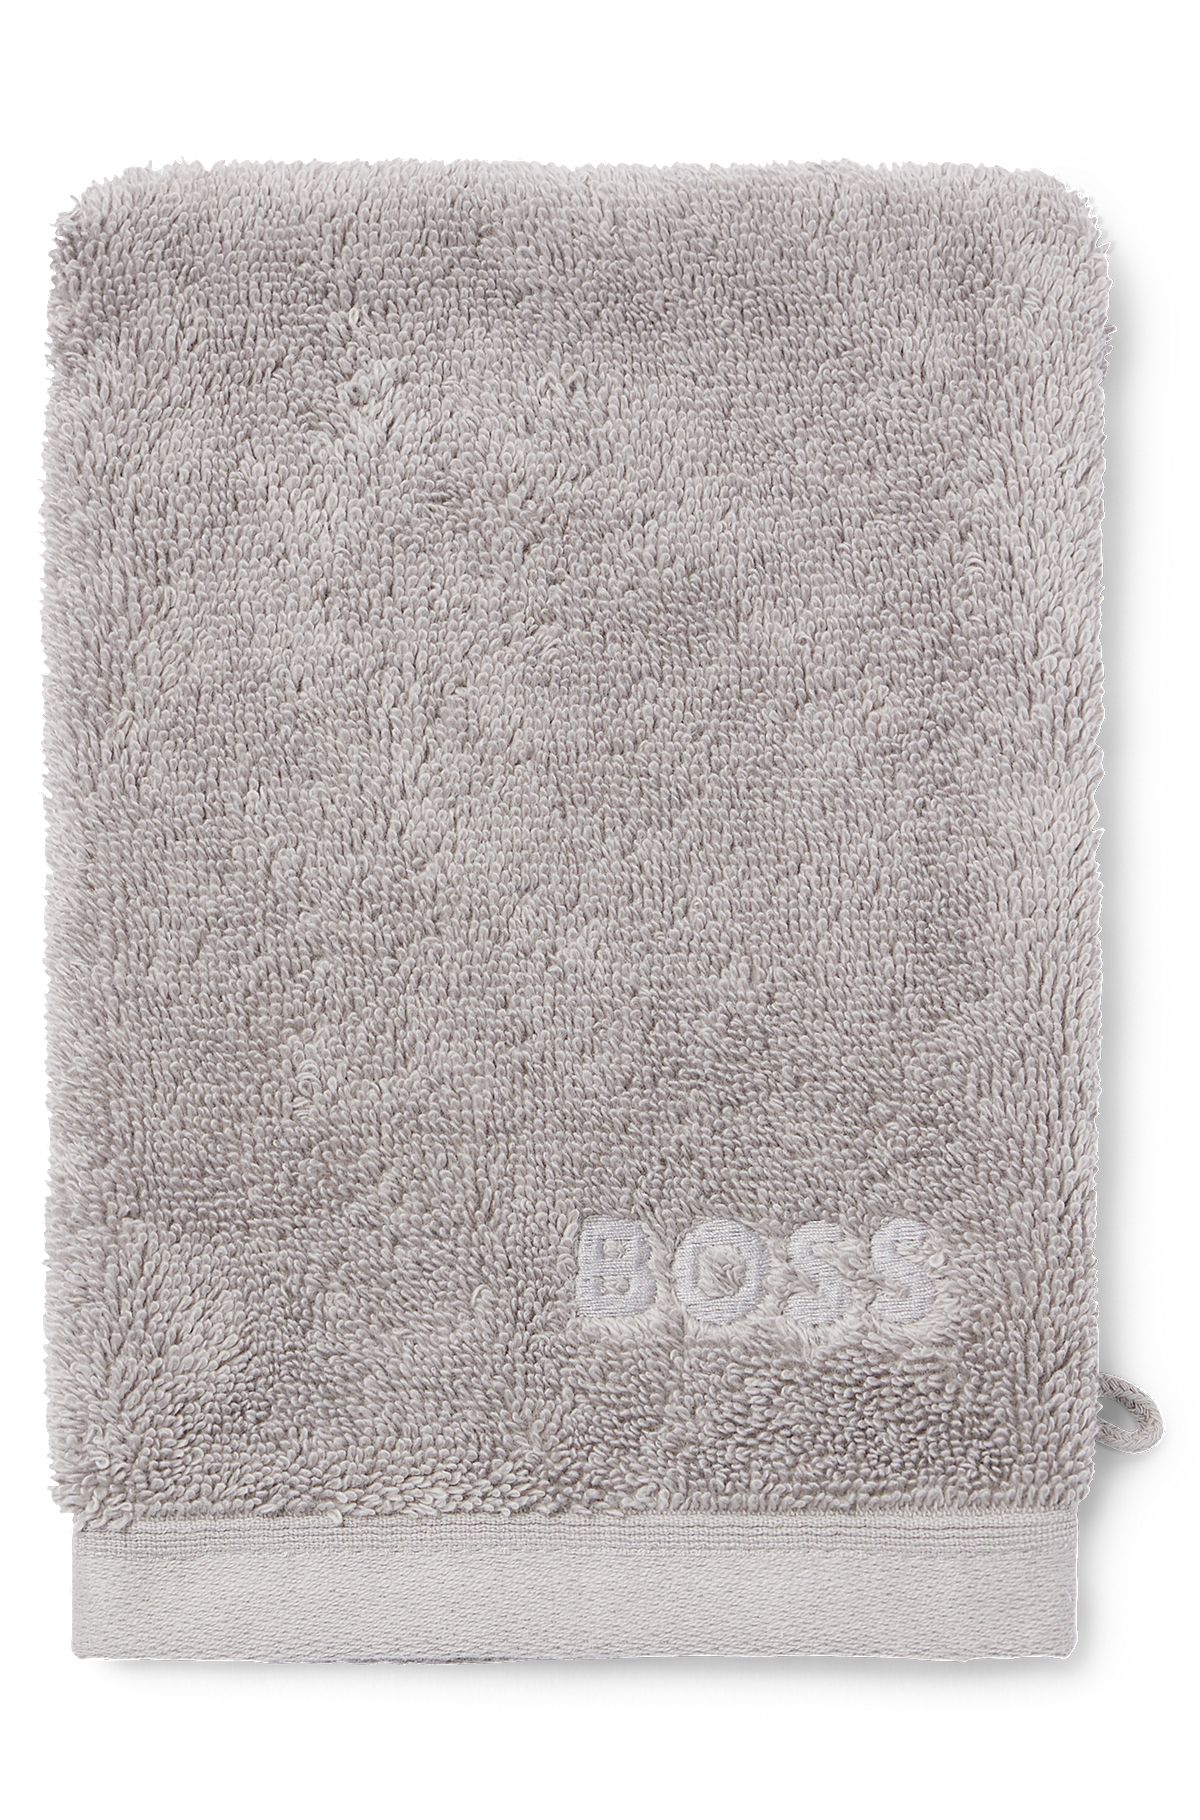 Manopla de baño plata de algodón del Egeo con logo tonal, Plata